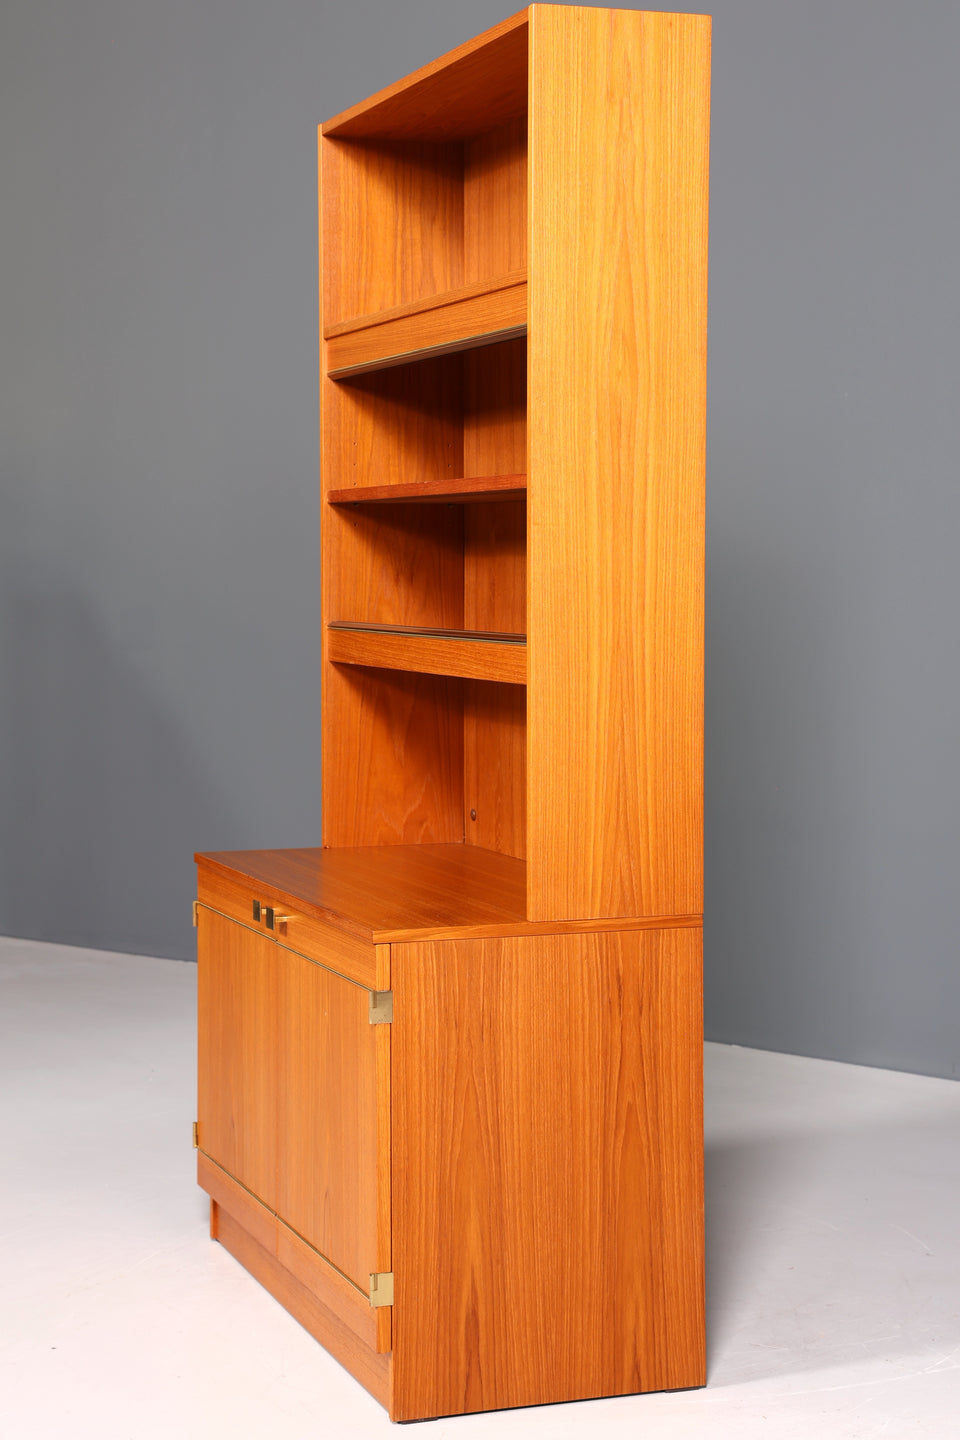 Traumhafter Mid Century Schrank Vintage Bücherregal Retro Holz Regal Highboard 60er Jahre